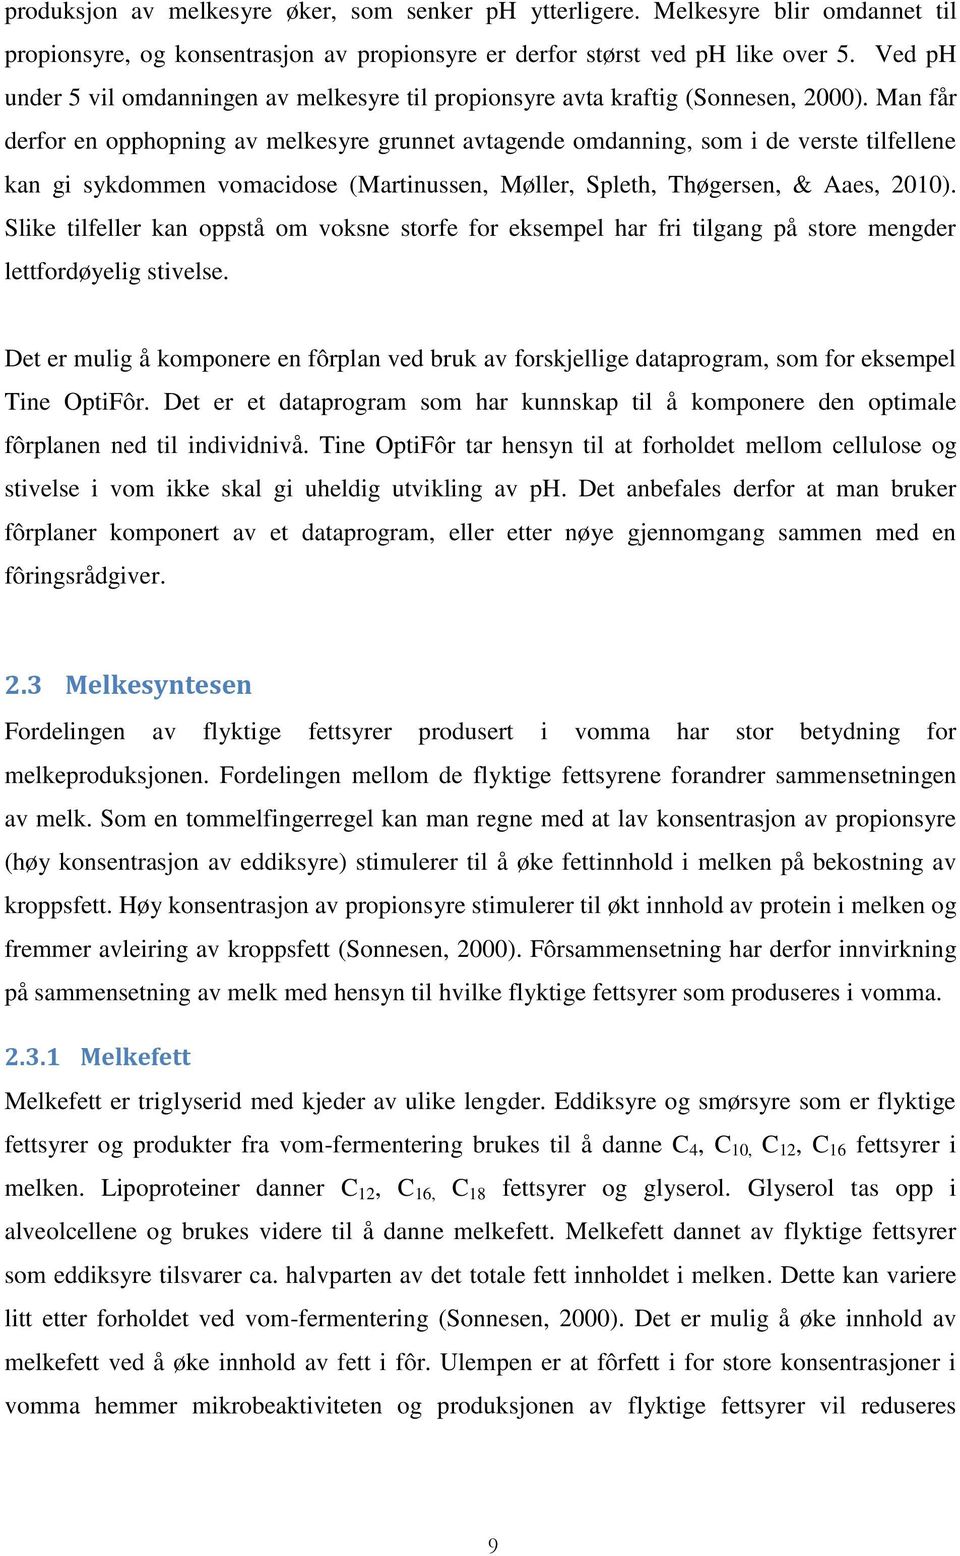 Man får derfor en opphopning av melkesyre grunnet avtagende omdanning, som i de verste tilfellene kan gi sykdommen vomacidose (Martinussen, Møller, Spleth, Thøgersen, & Aaes, 2010).